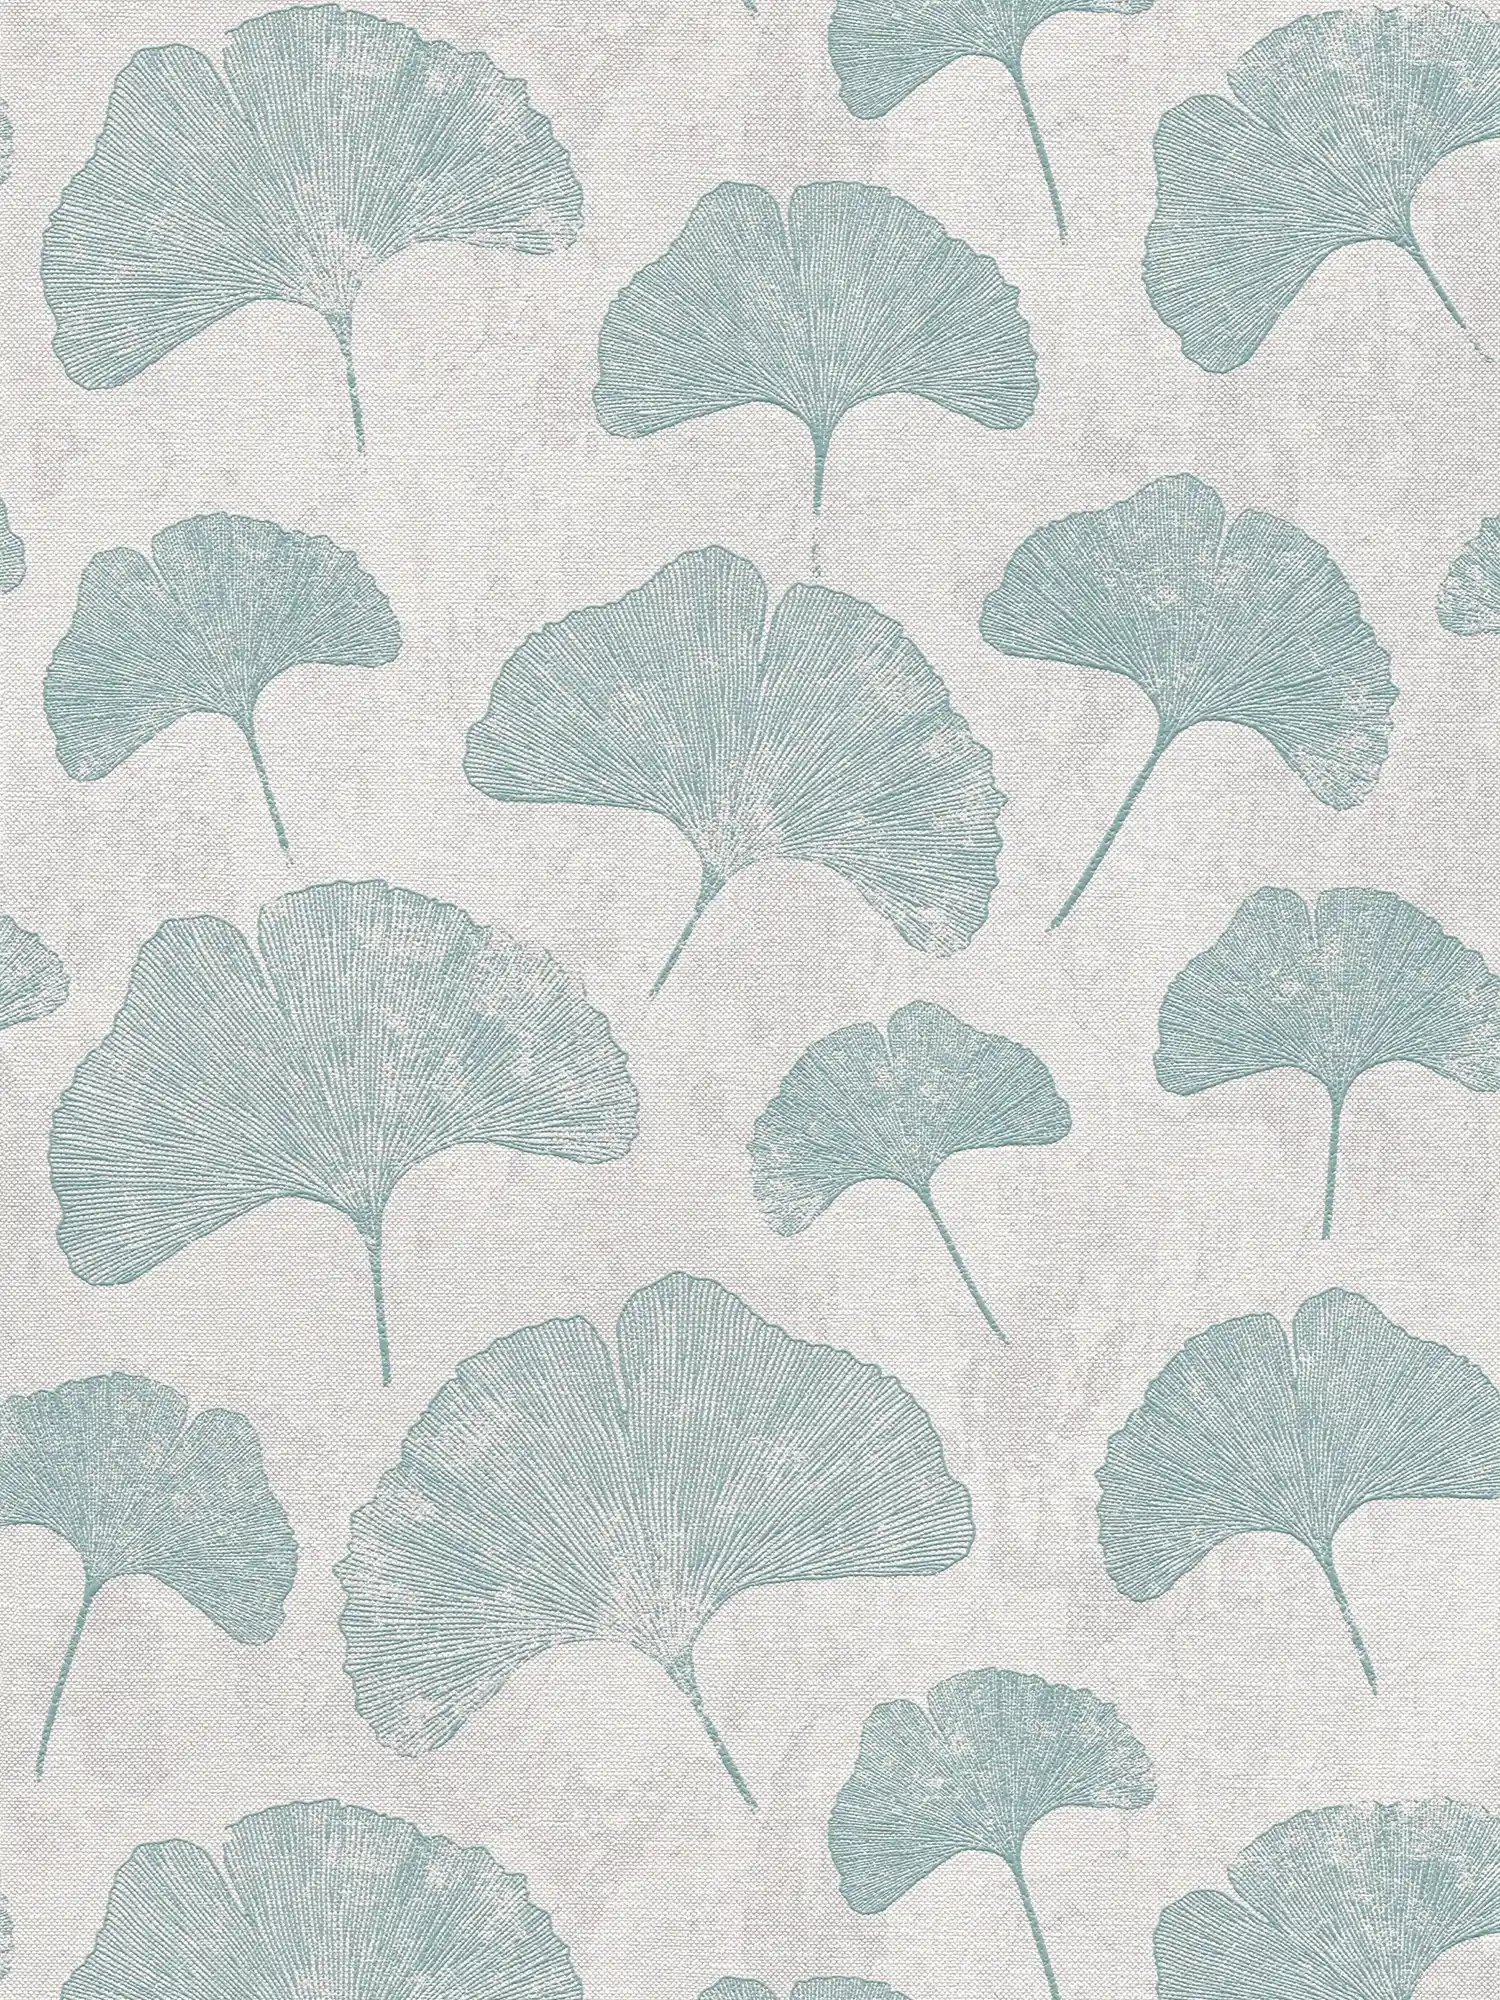 Bloemrijkbladeren behang mat structuur - mint, grijs
